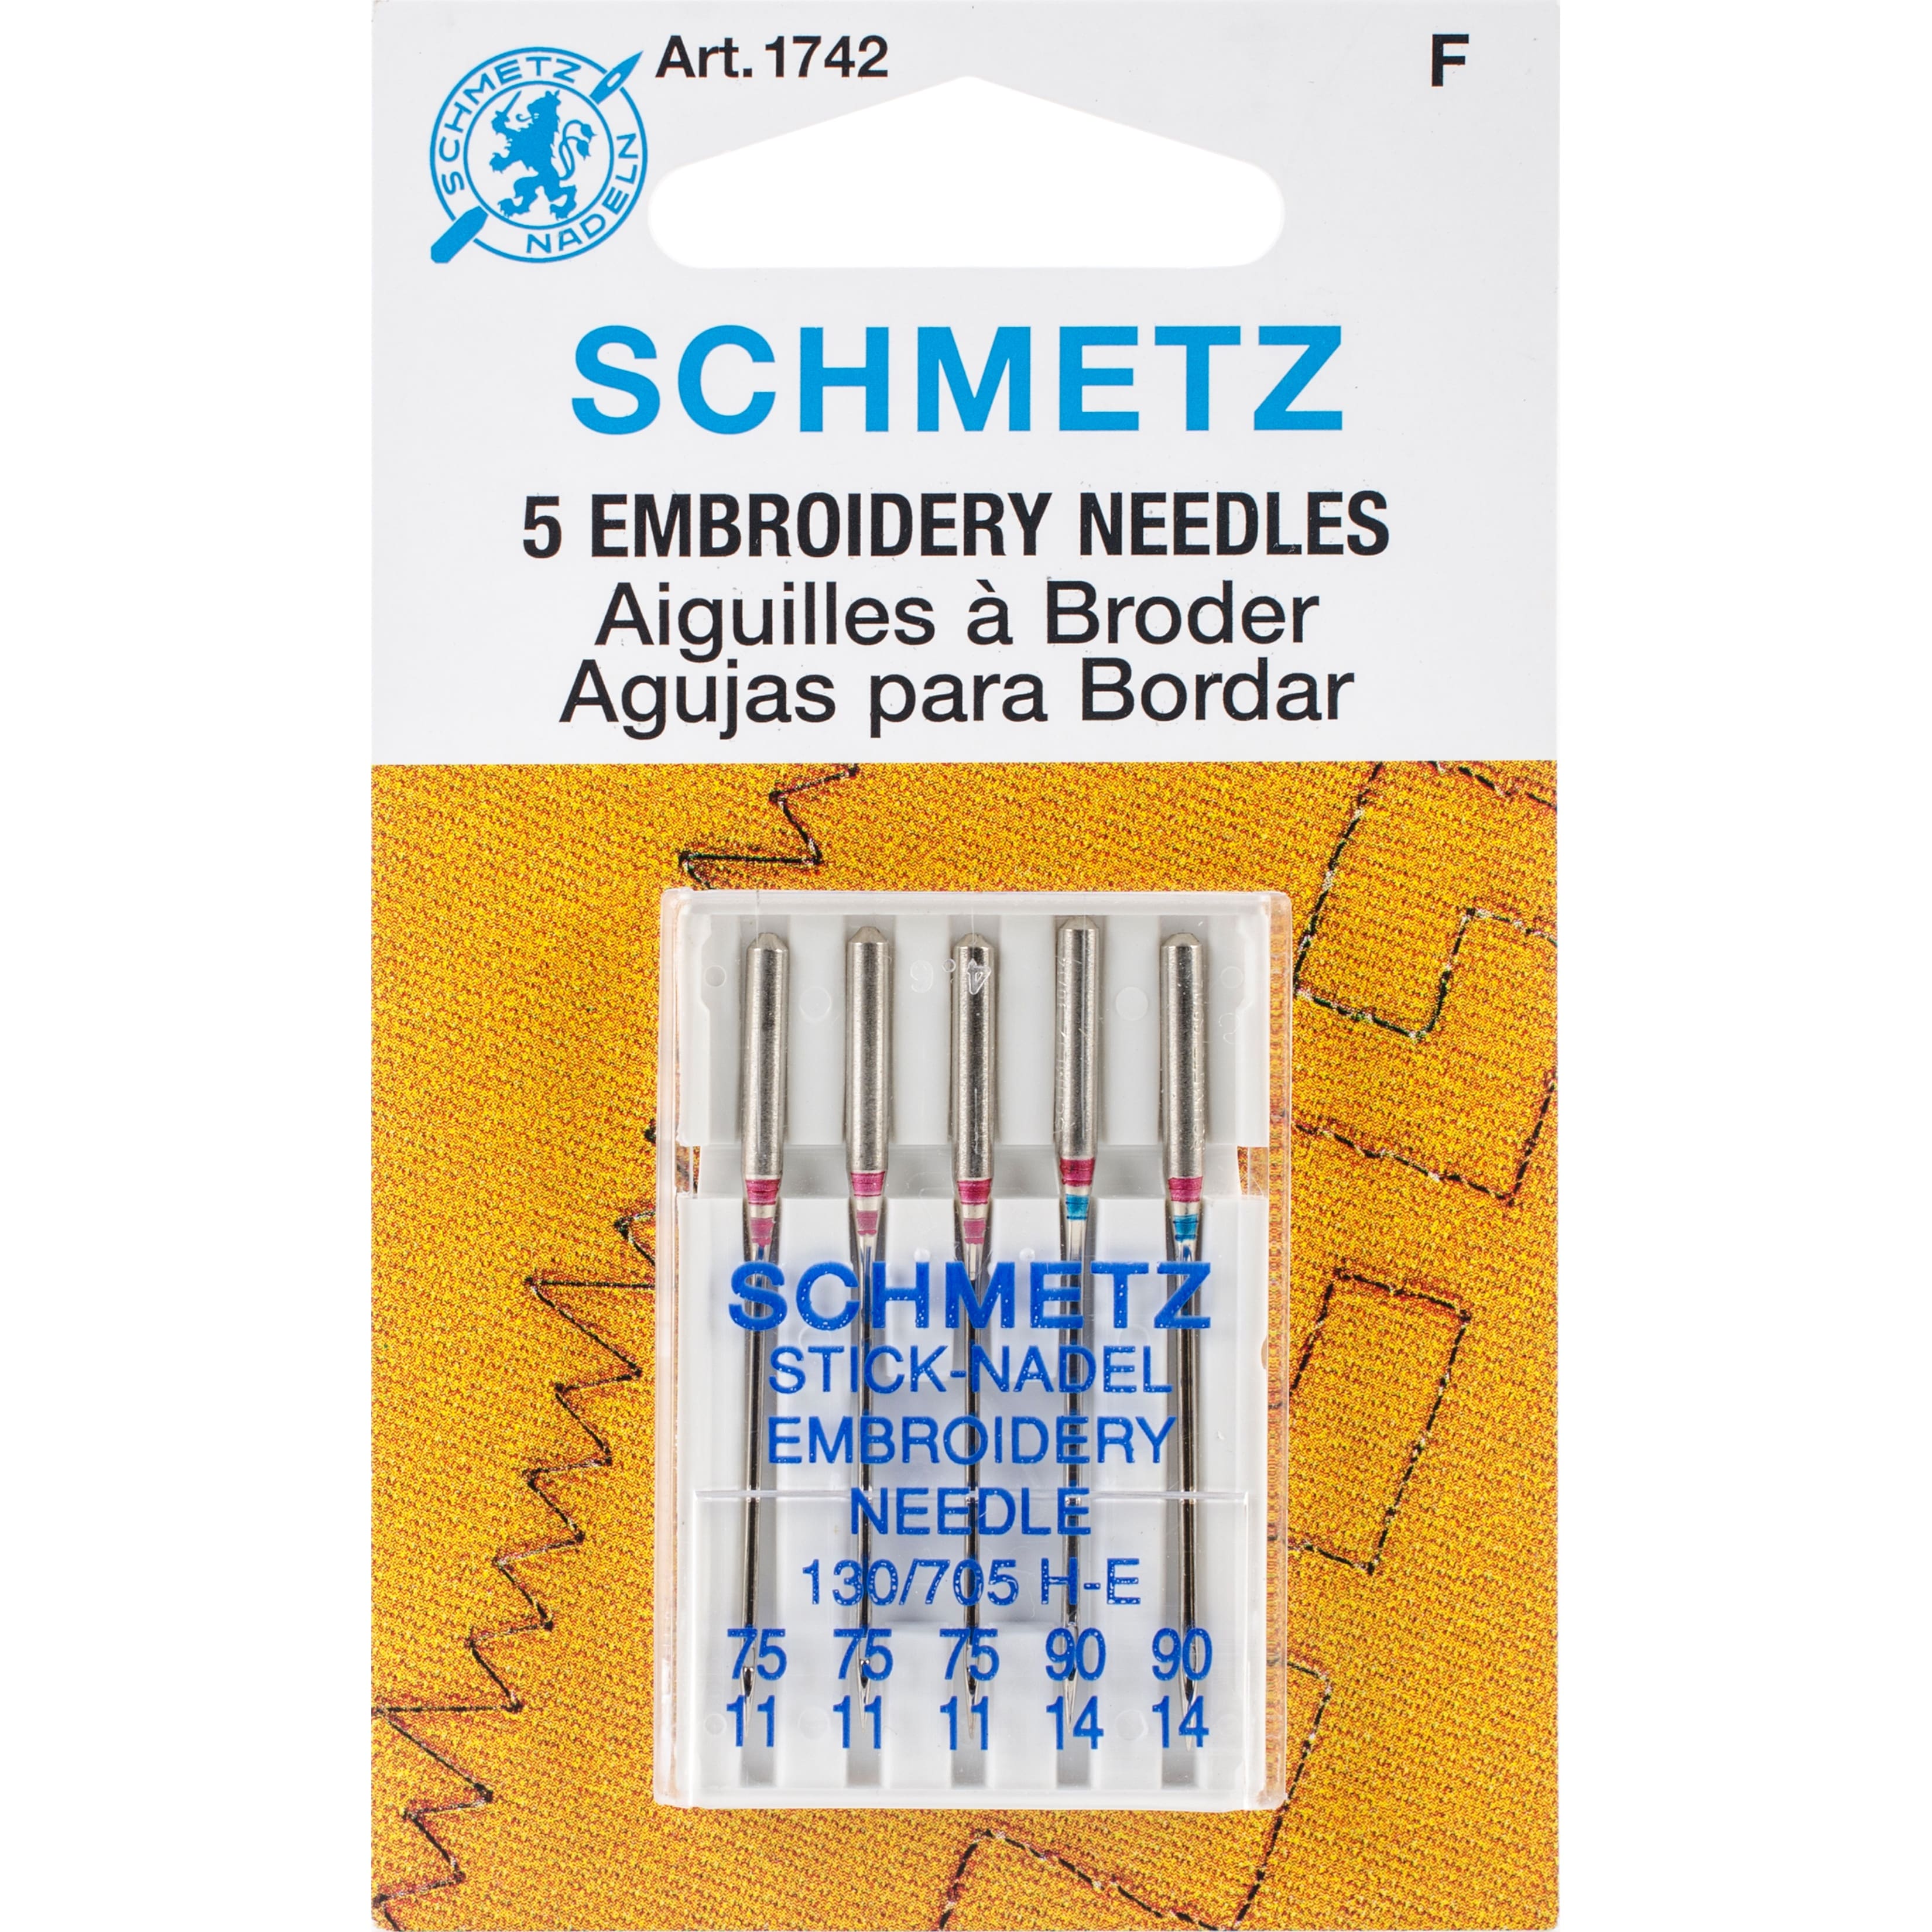 Euro-Notions Schmetz Embroidery Machine Needles, 11/75 (3) & 14/90 (2)